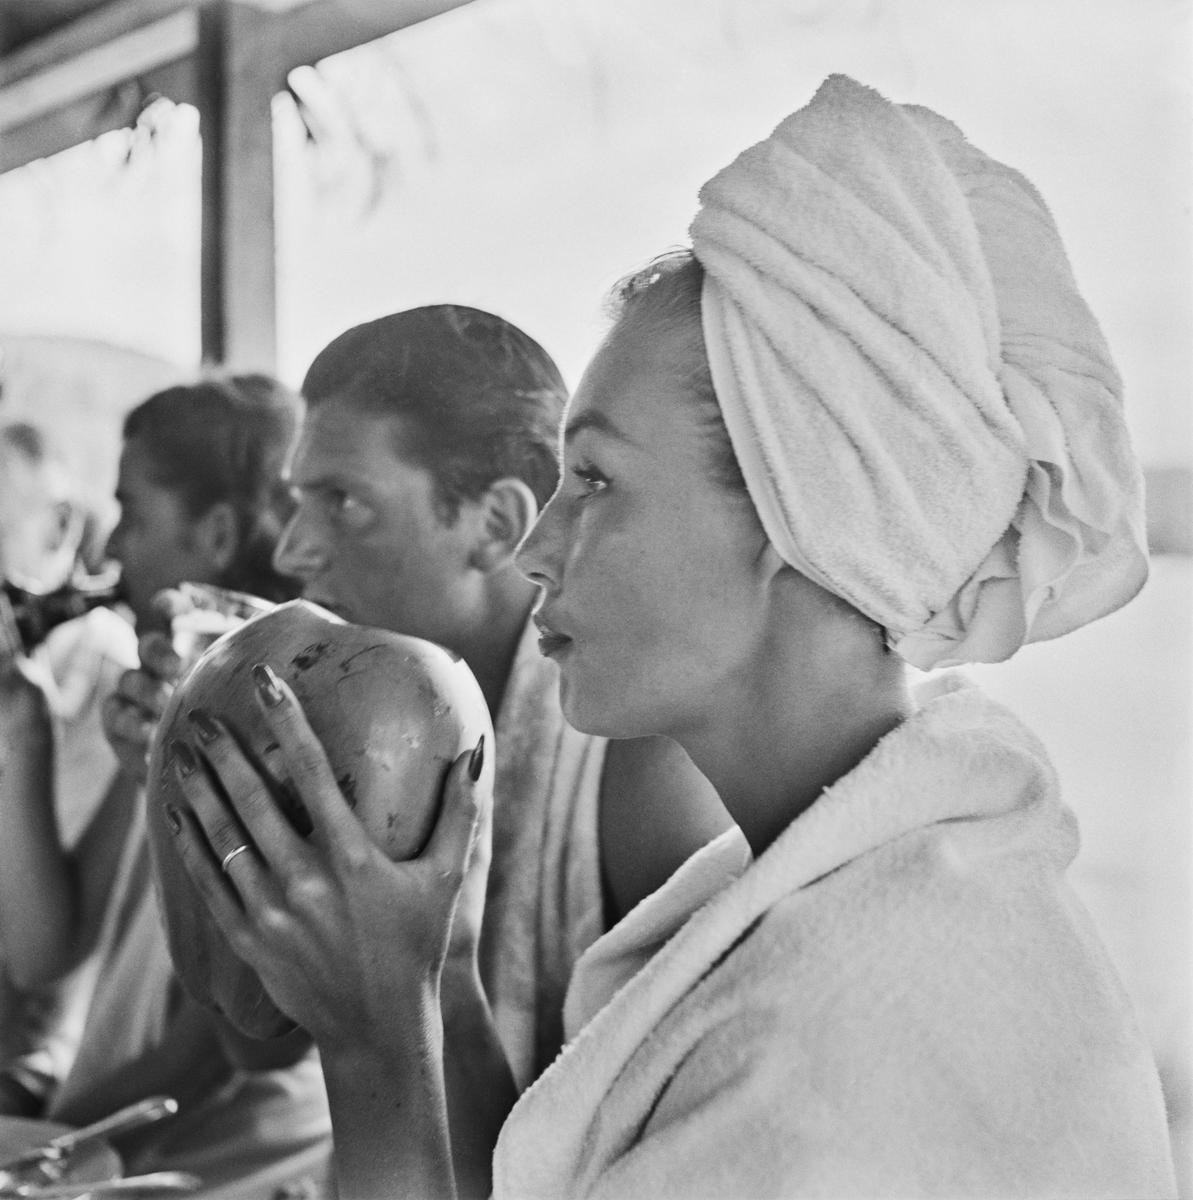 Fotomodell Liz Pringle beim Trinken aus einer Kokosnuss im Round Hill Resort, Montego Bay, Jamaika, 1953. 
Foto von Slim Aarons 

Schlanker Aarons-Silbergelatine-Druck auf Faserbasis 
Später gedruckt 
Slim Aarons Estate Edition 
Hergestellt unter